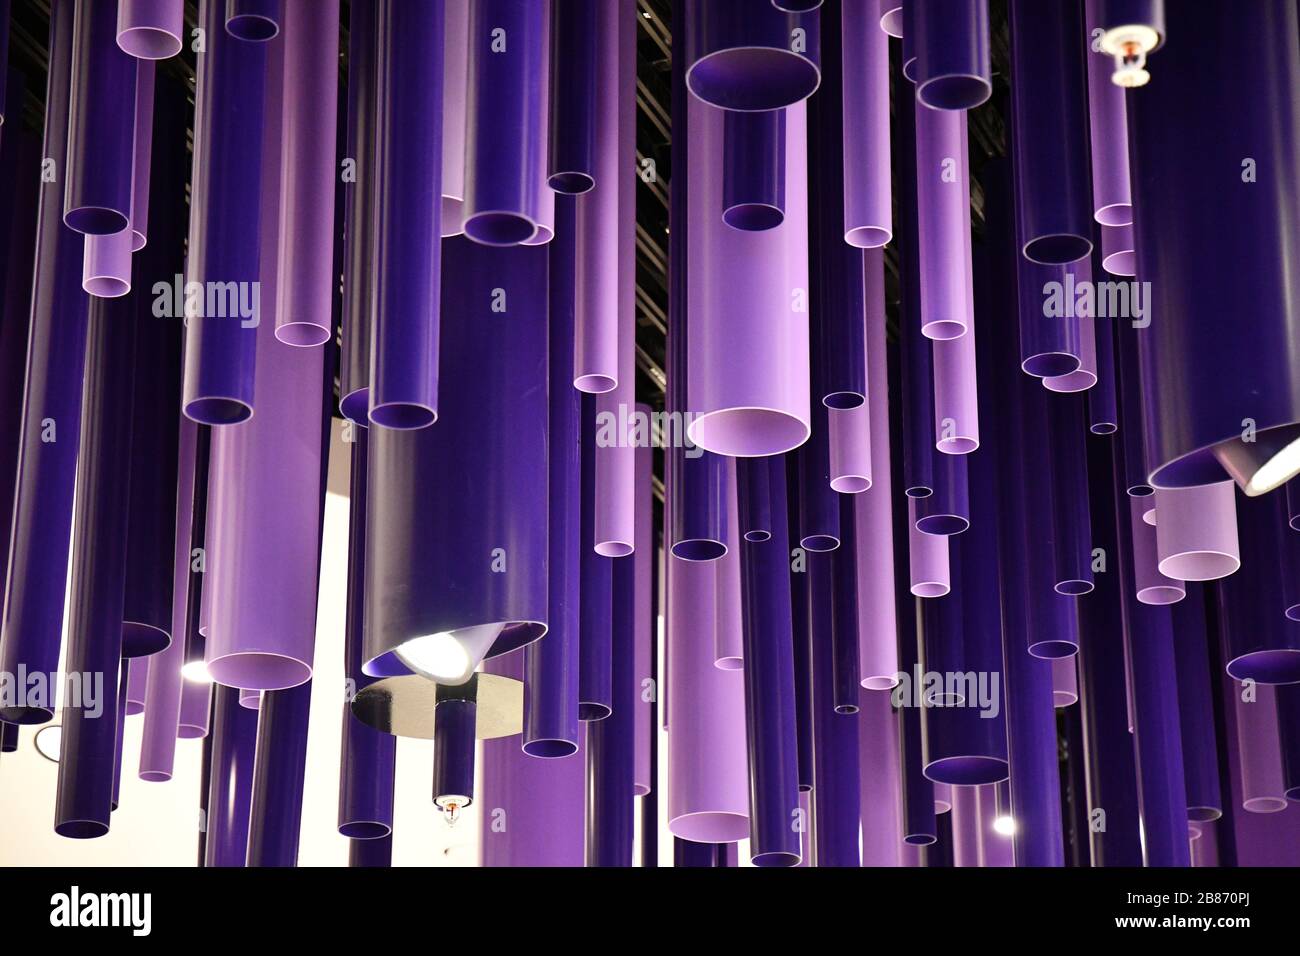 Lignes géométriques arrière-plan abstrait. Tuyaux de cylindre bleu violet de différents diamètres. Décorations suspendues inhabituelles. Motif de couleur violet. Créativité Banque D'Images